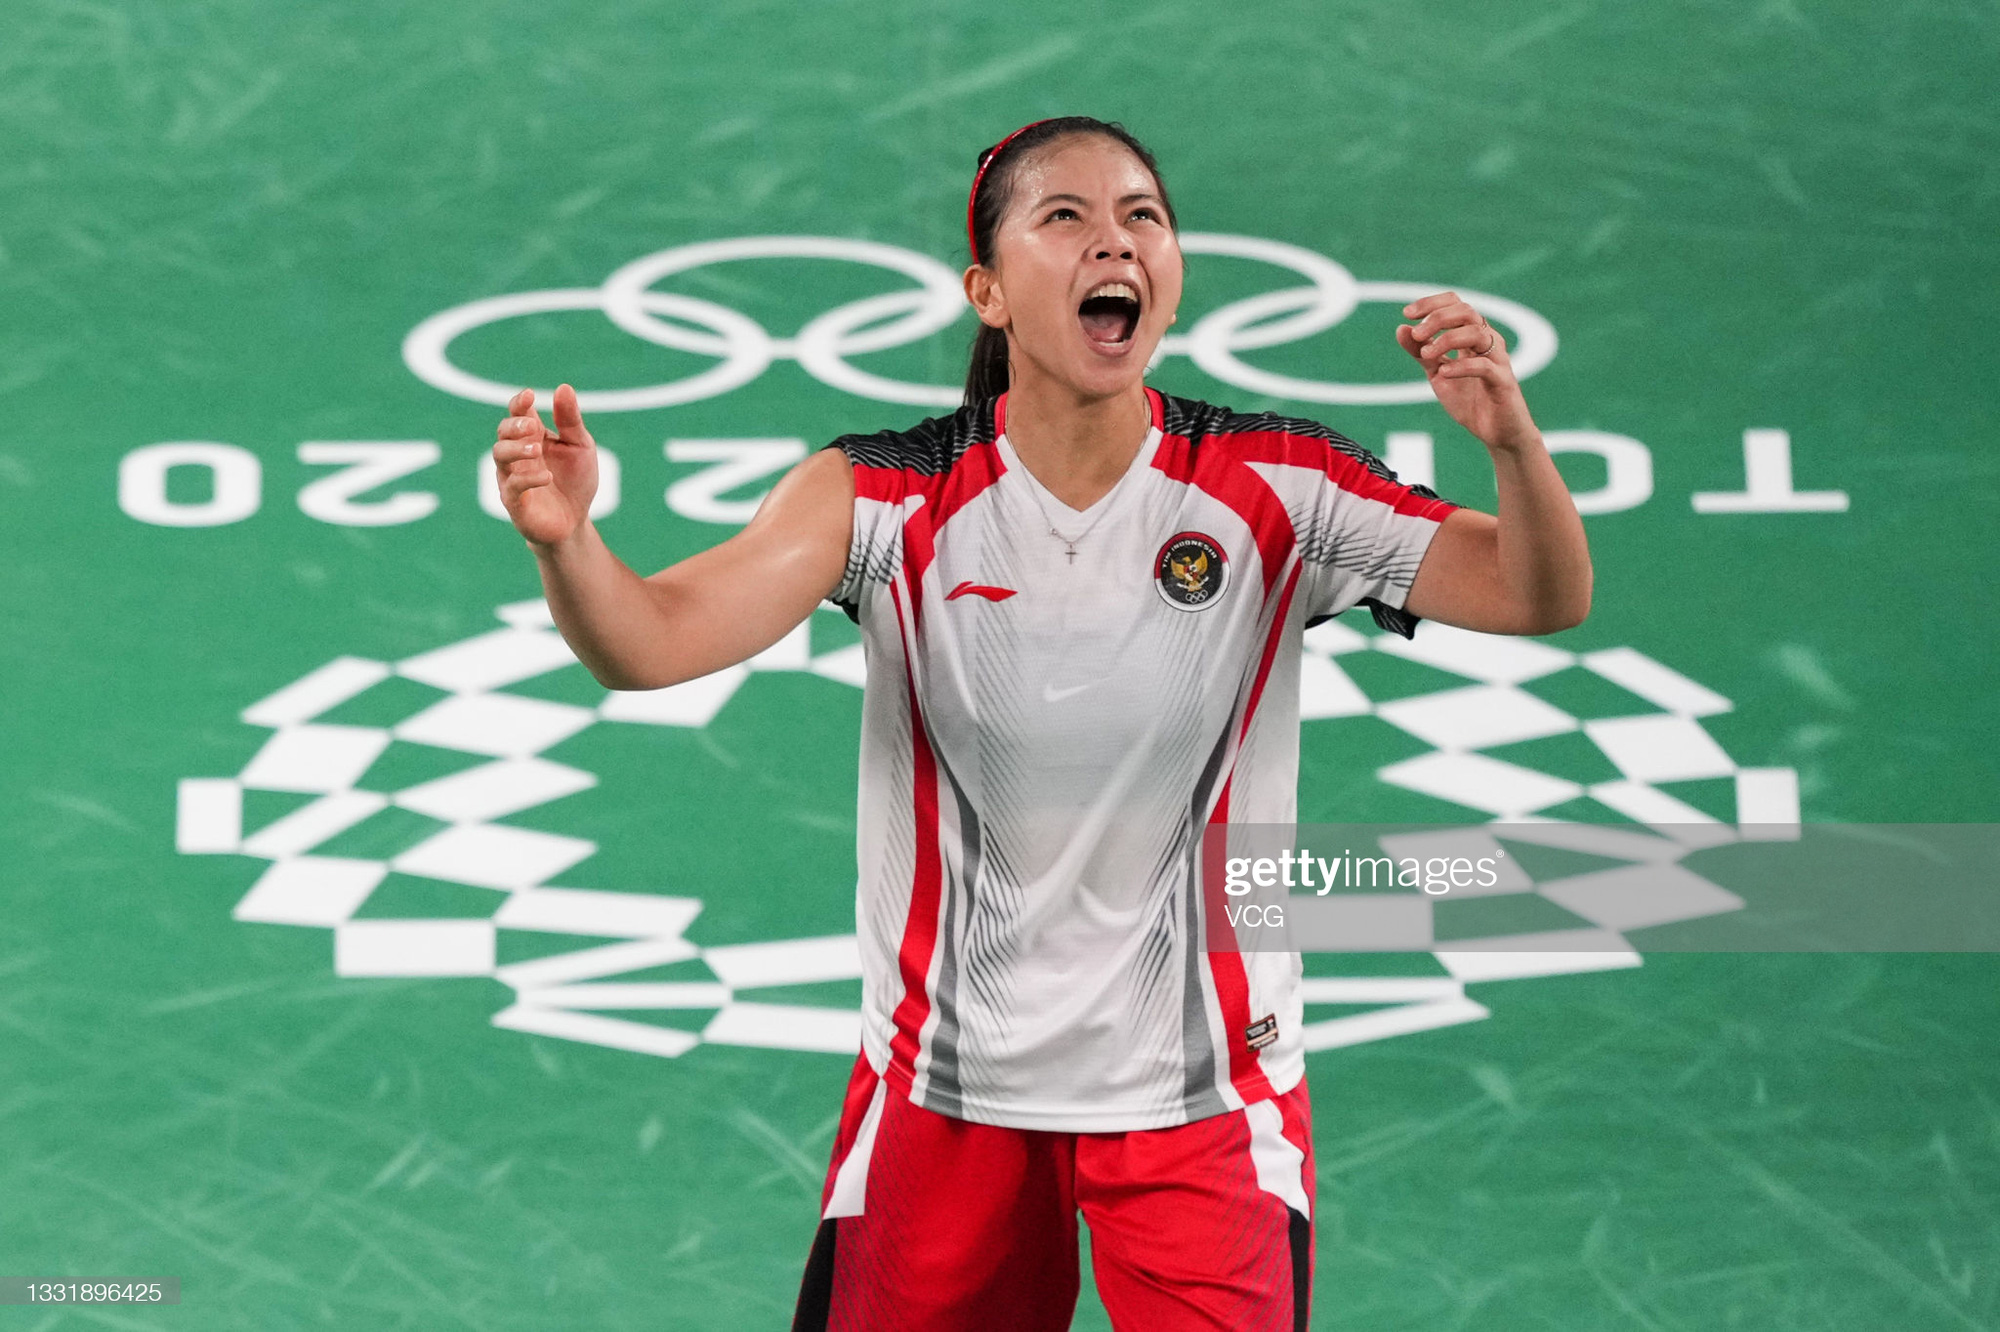 Sau bùng nổ trên sân, cặp đôi HCV Olympic cầu lông của Indonesia cúi người tỏ lòng biết ơn đầy xúc động - Ảnh 5.